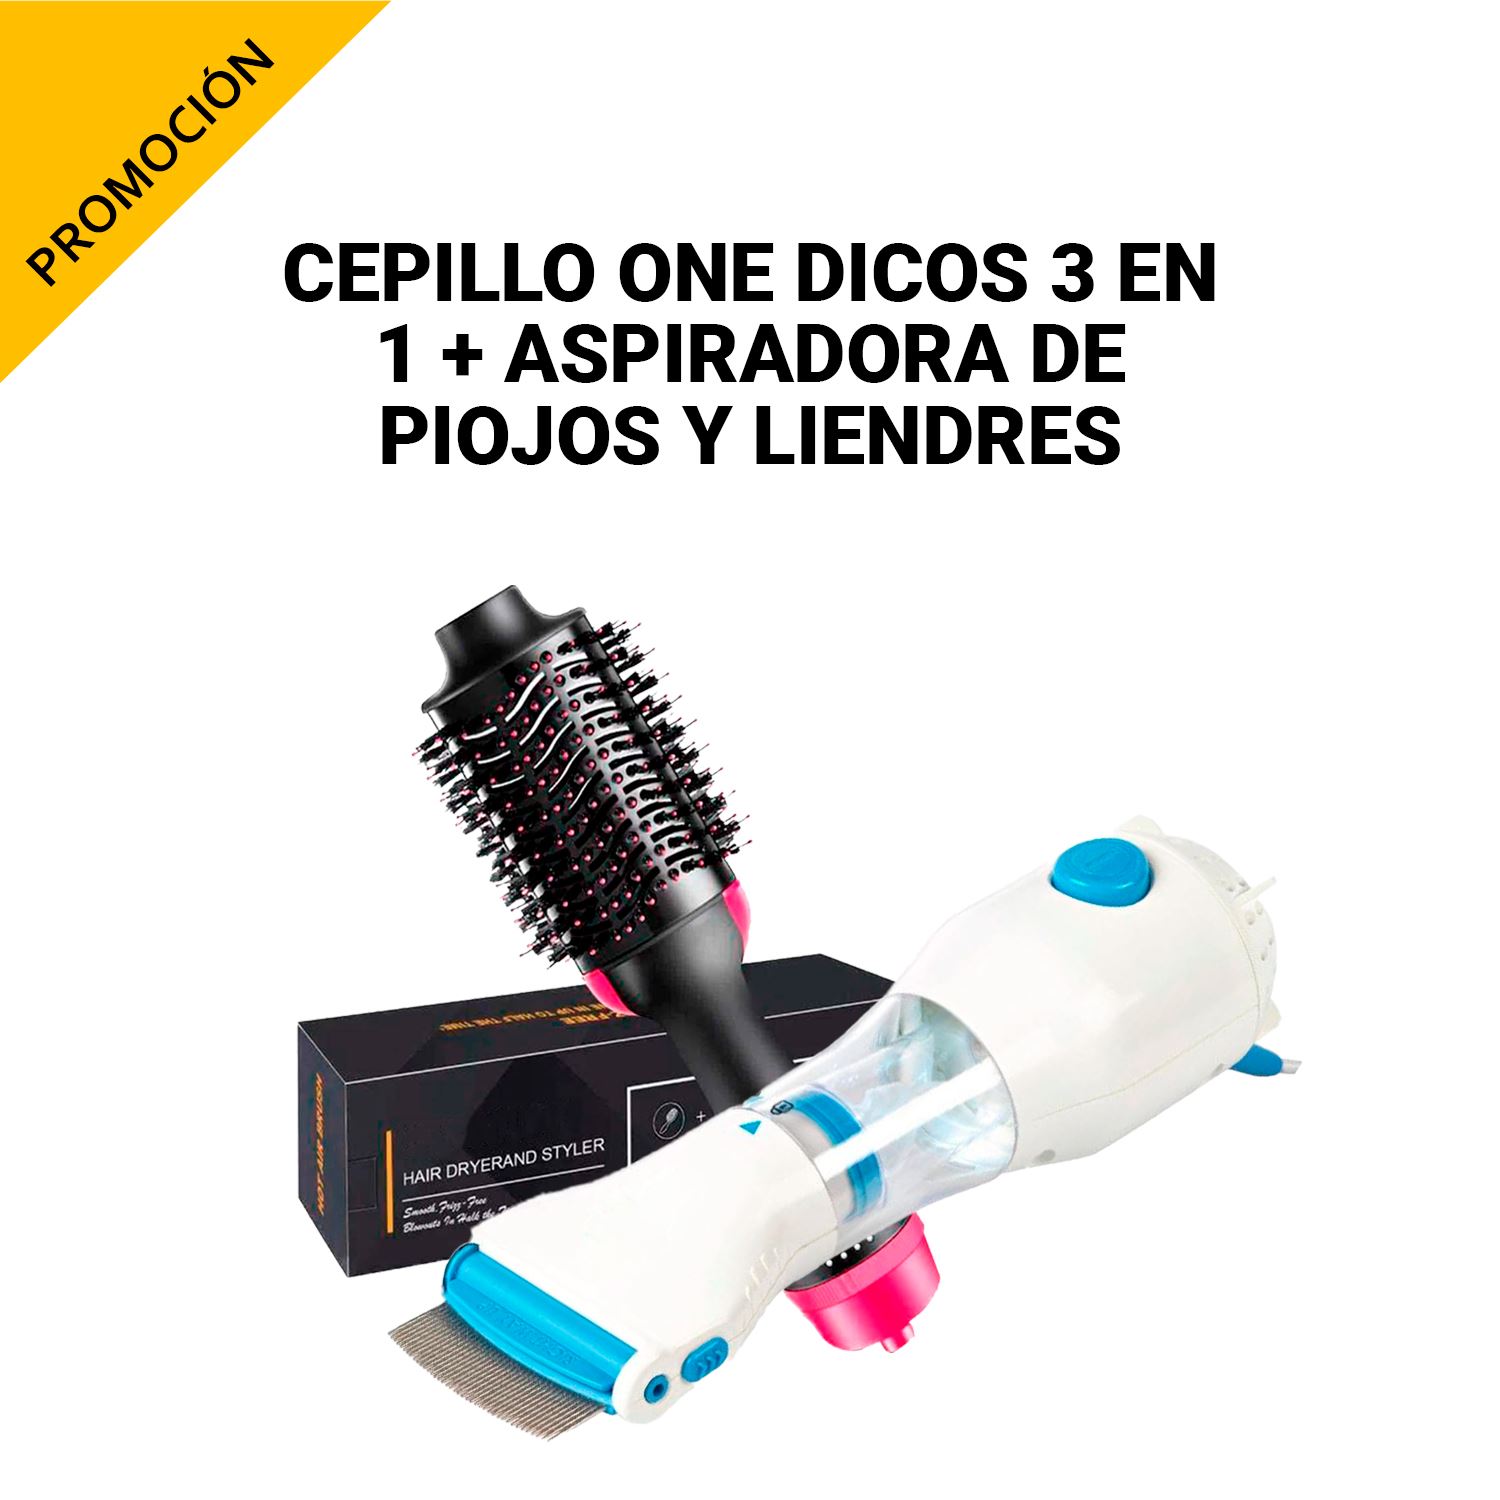 Cepillo One dicos 3EN1 + Aspiradora de piojos y liendres v-comb